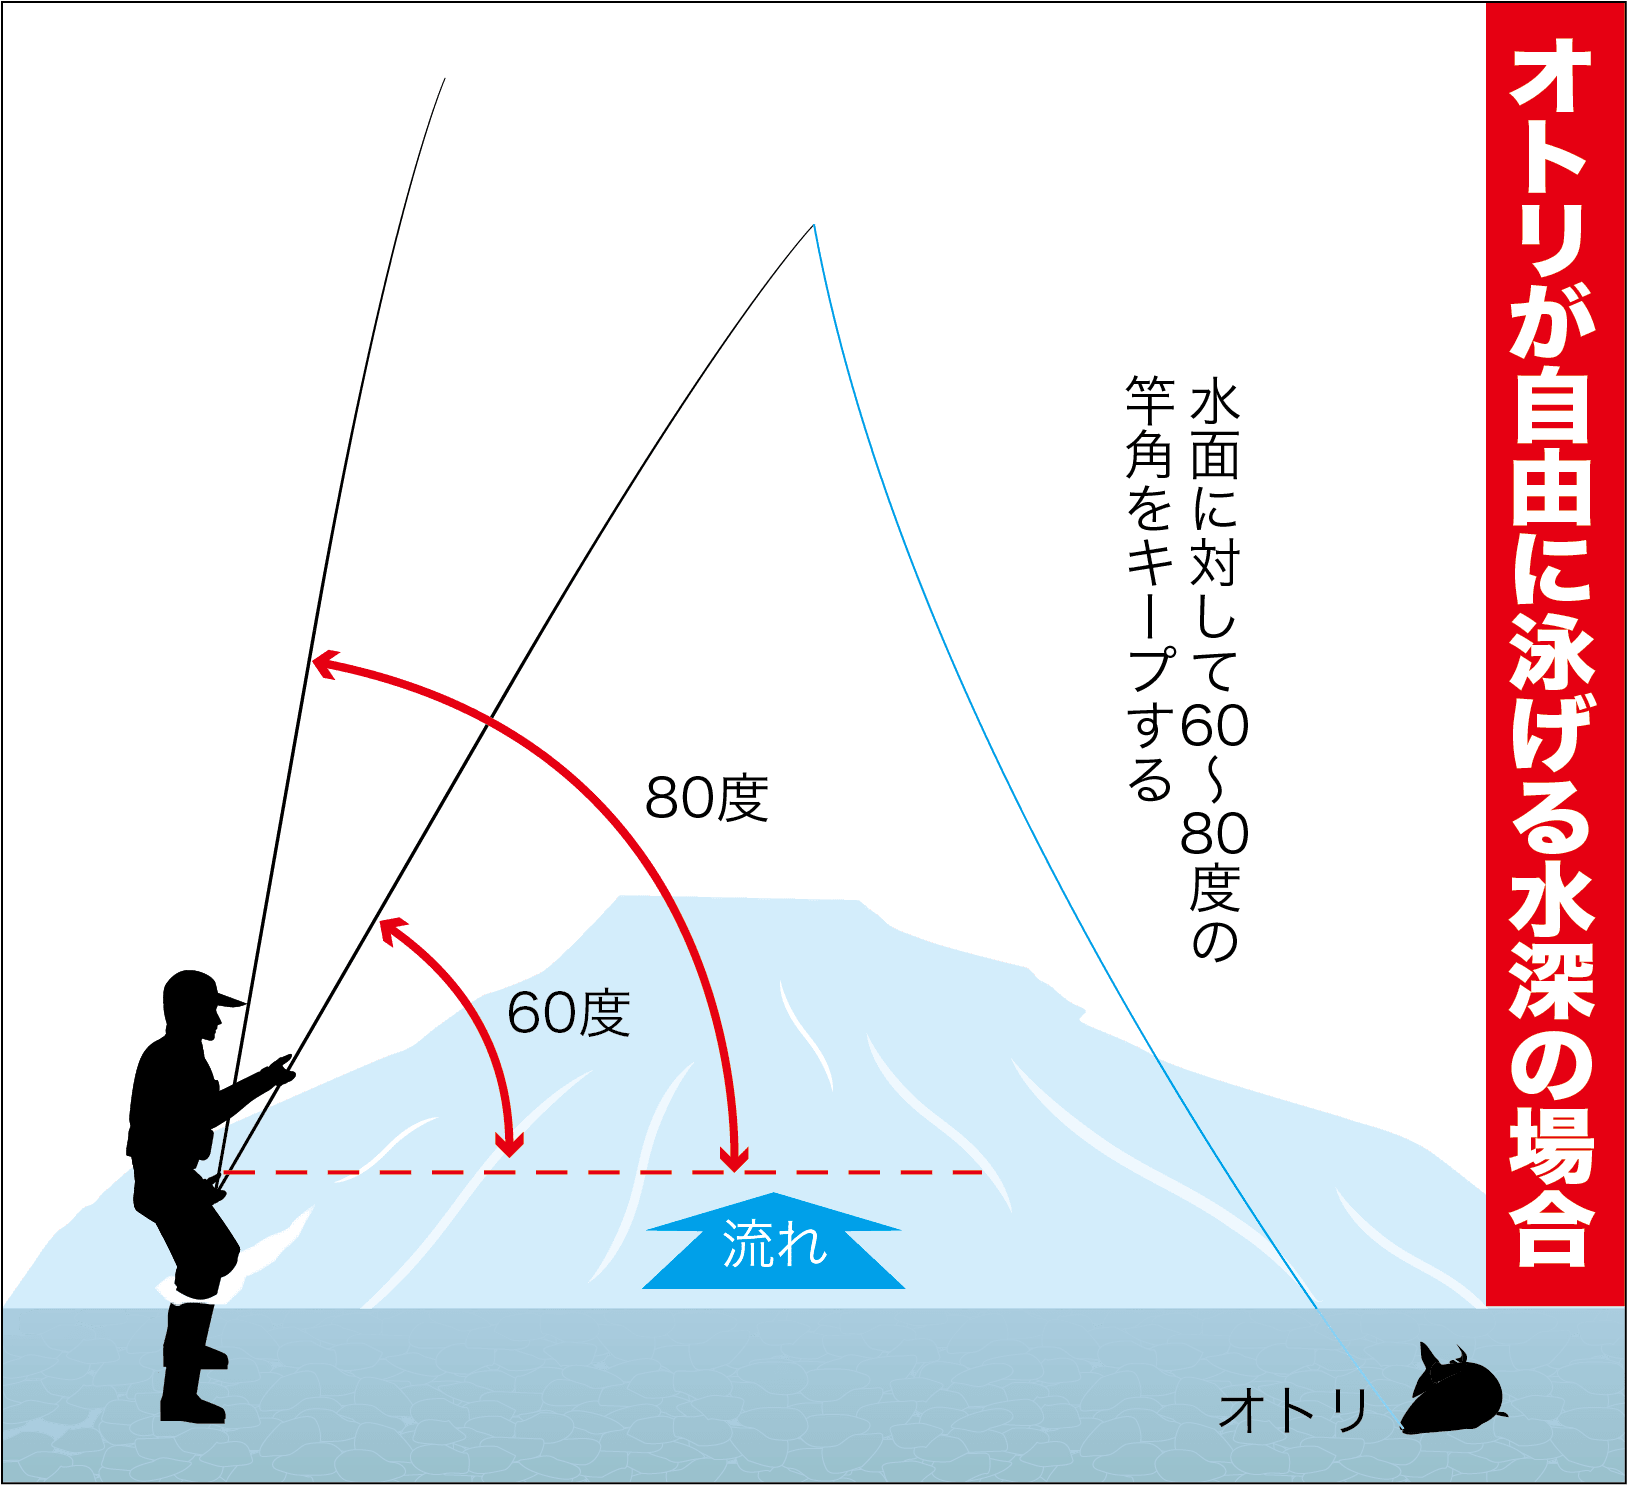 安定の釣果を追求 アユ 泳がせ釣りの 竿の角度 を再点検 関西のつりweb 釣りの総合情報メディアmeme